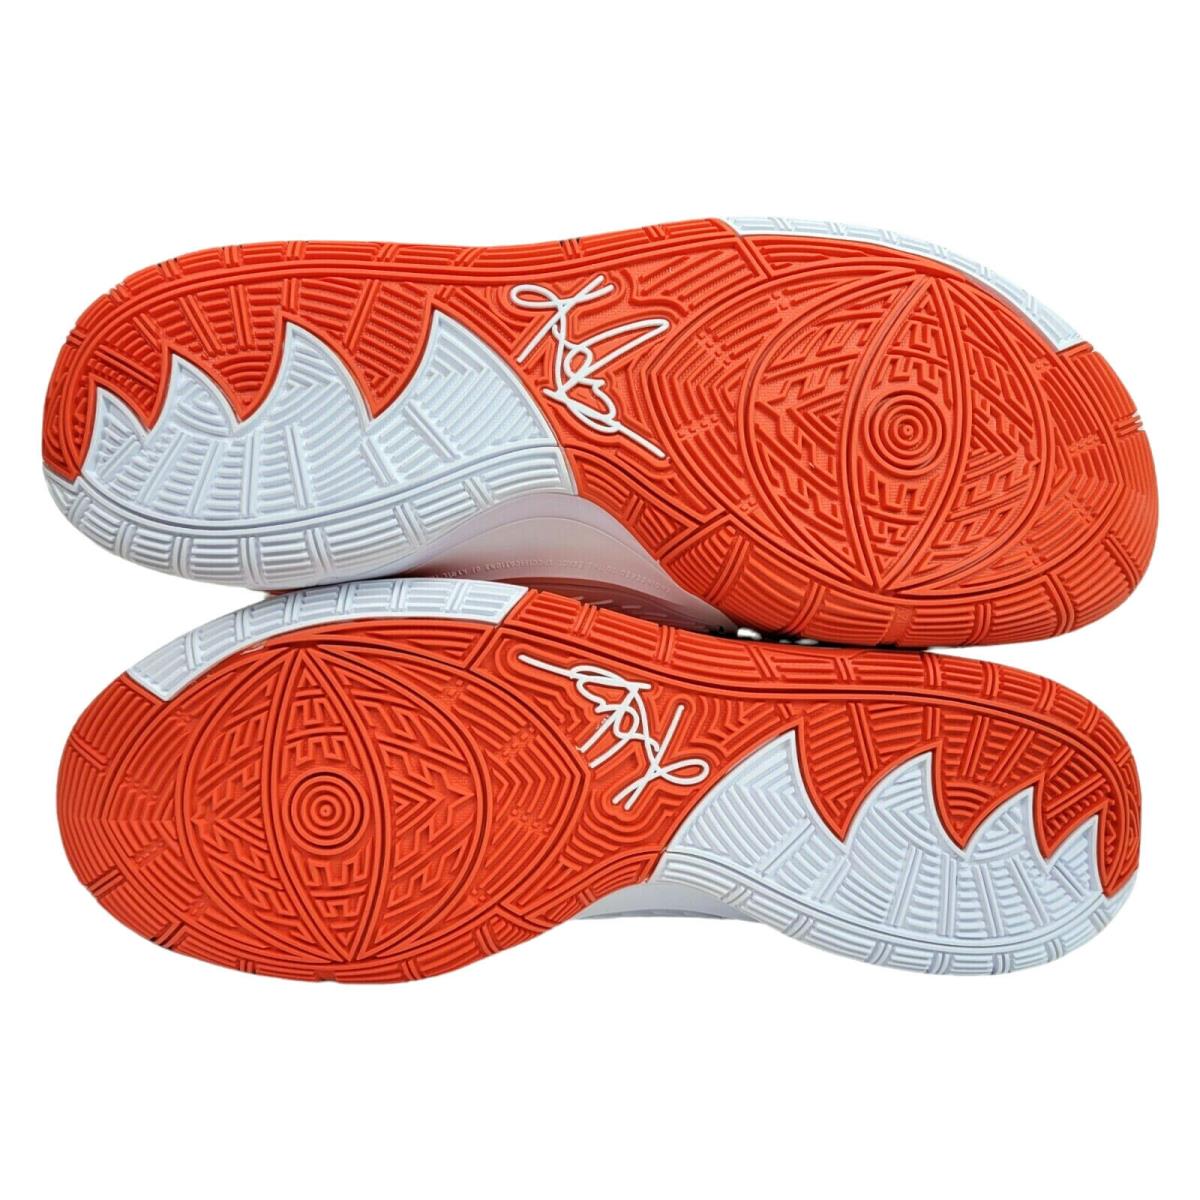 Nike shoes Kyrie - Orange 7